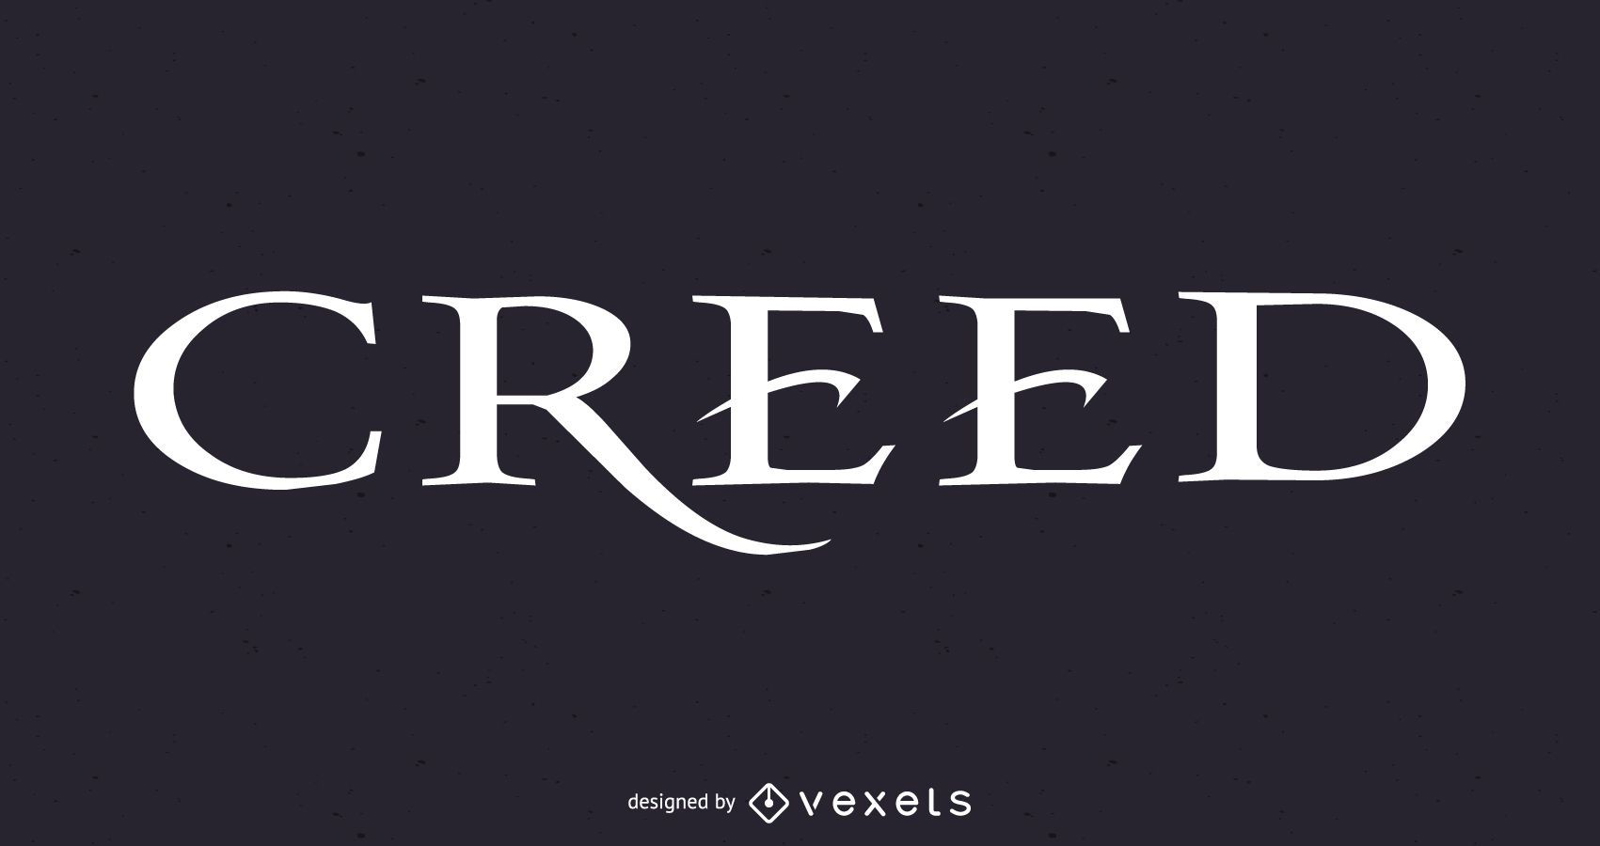 Creed:Band Logo vector